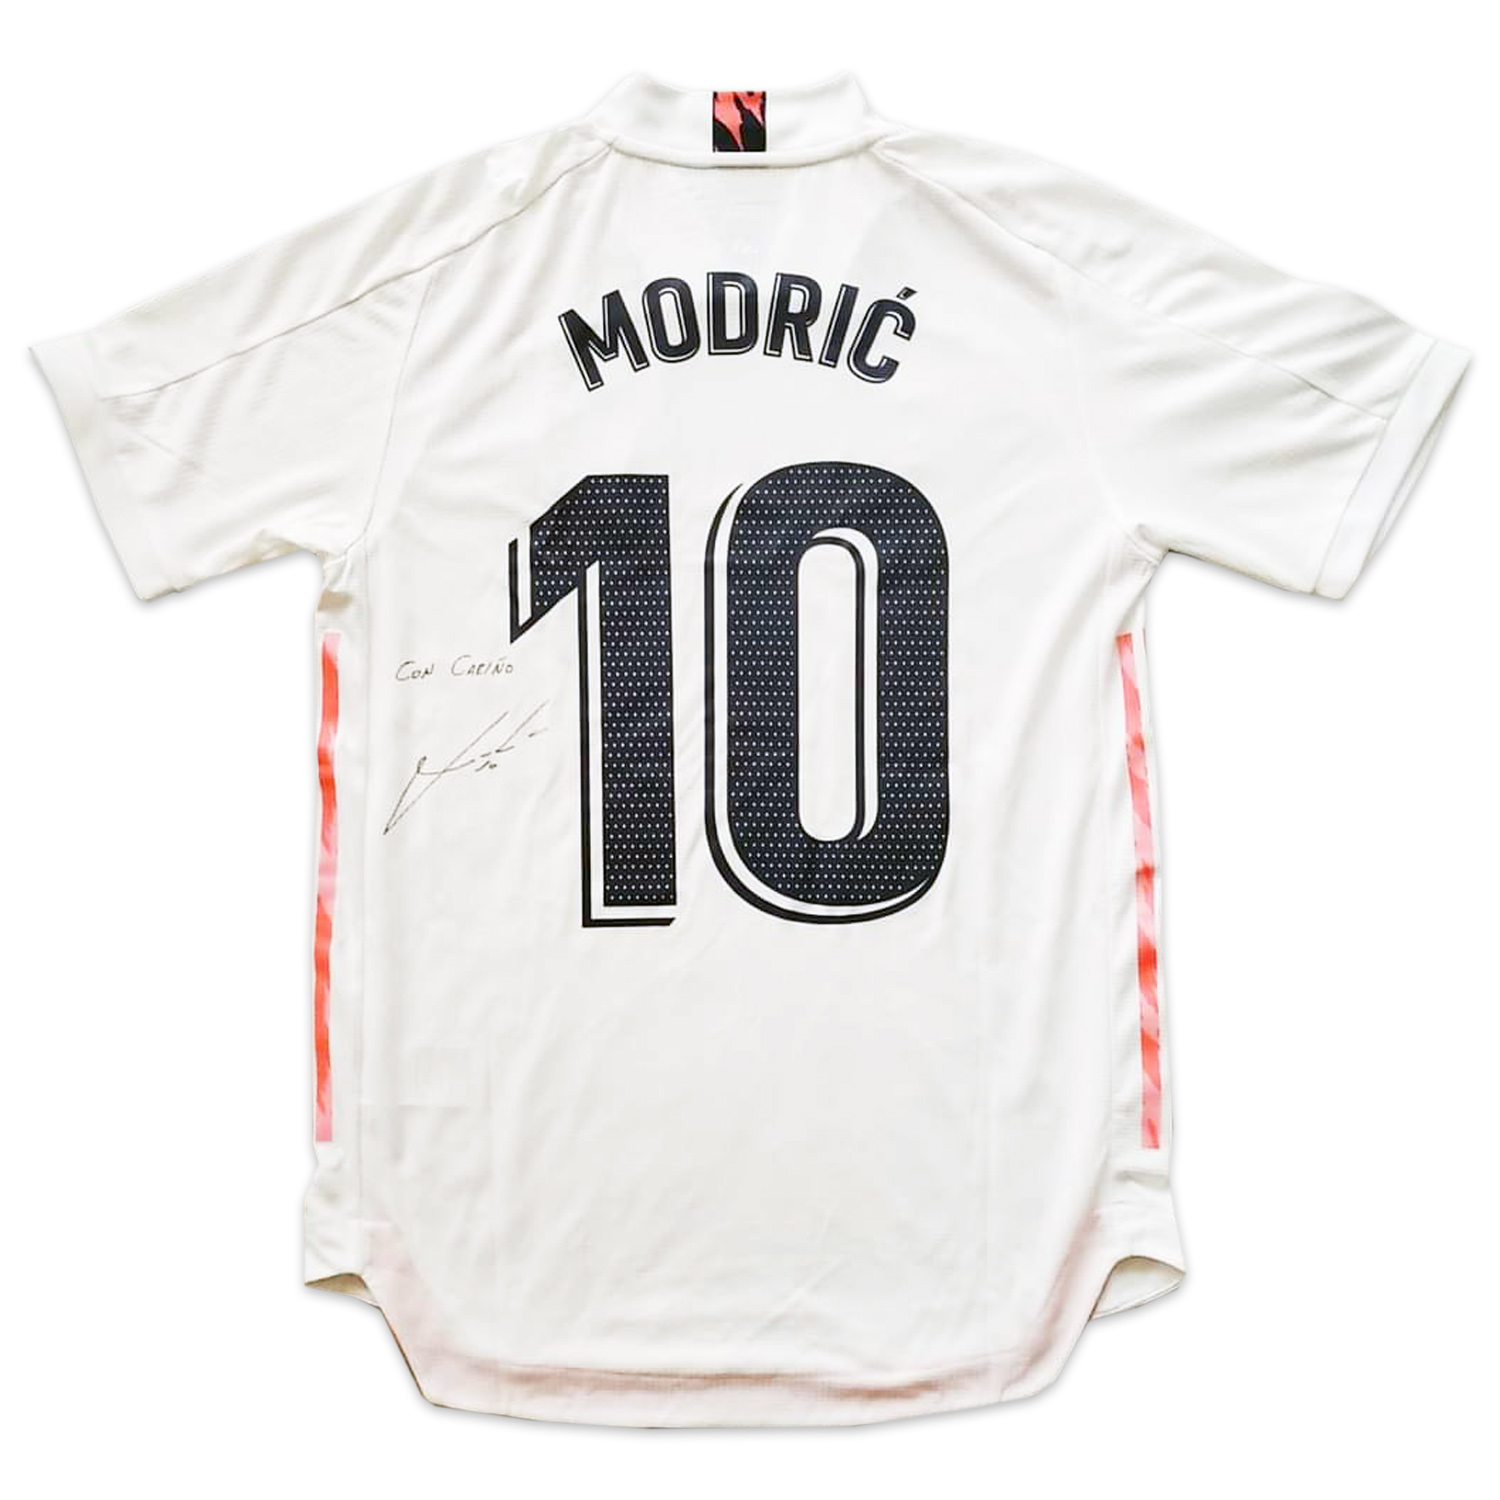 ルカ・モドリッチ直筆サイン入り選手支給レアルマドリード20/21ホームユニフォーム / Luka Modric signed Real Madrid  20/21 player issued home shirt